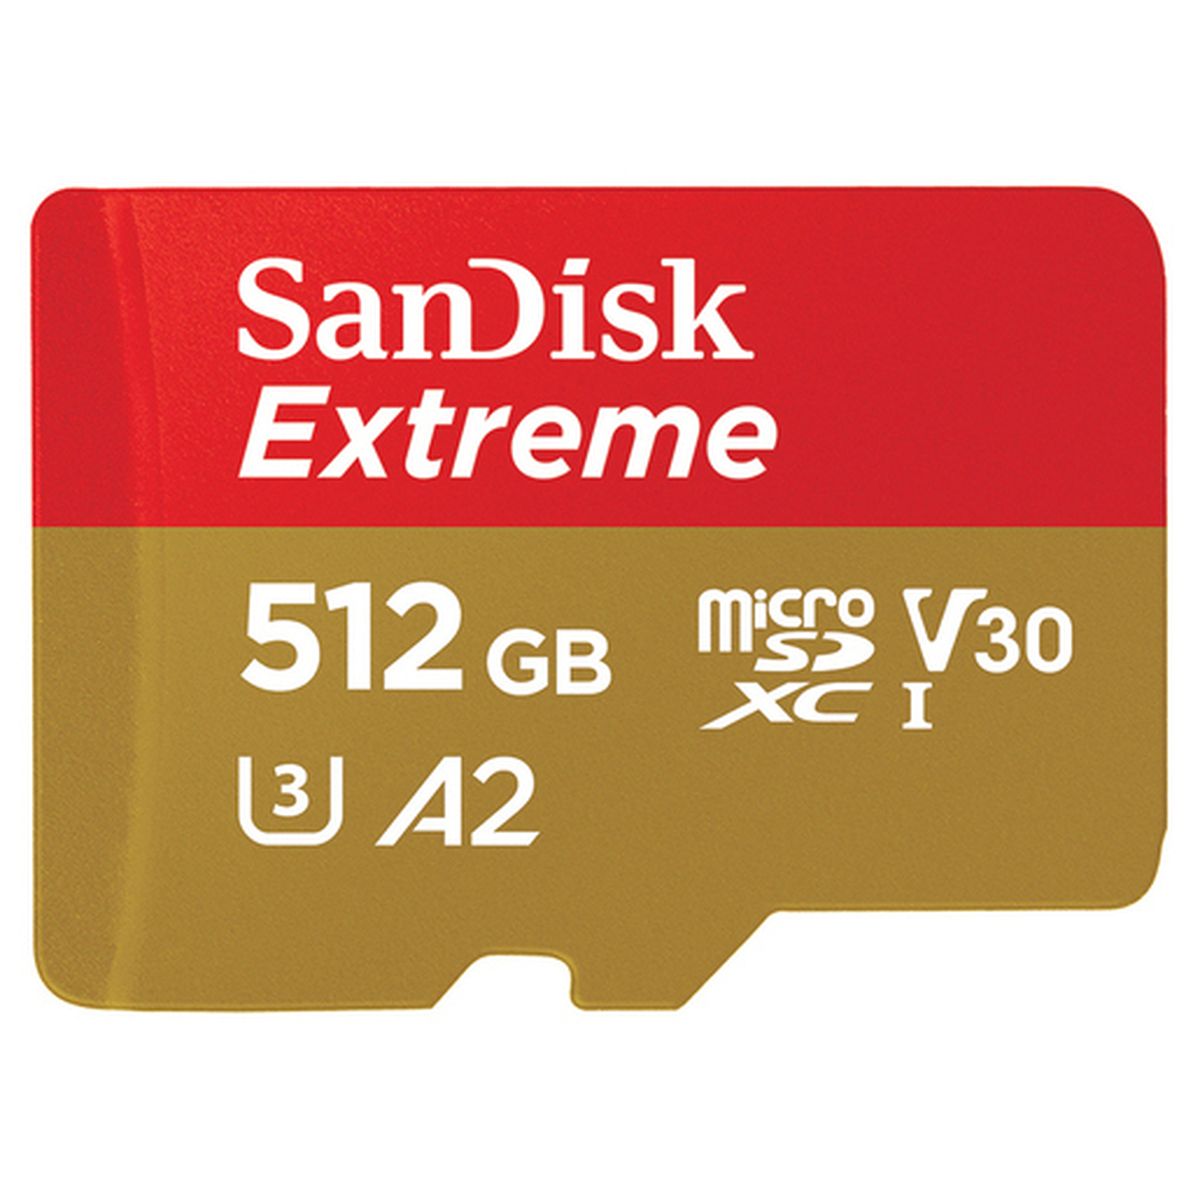 SanDisk Extreme 512GB microSDXC 190 MB/s 